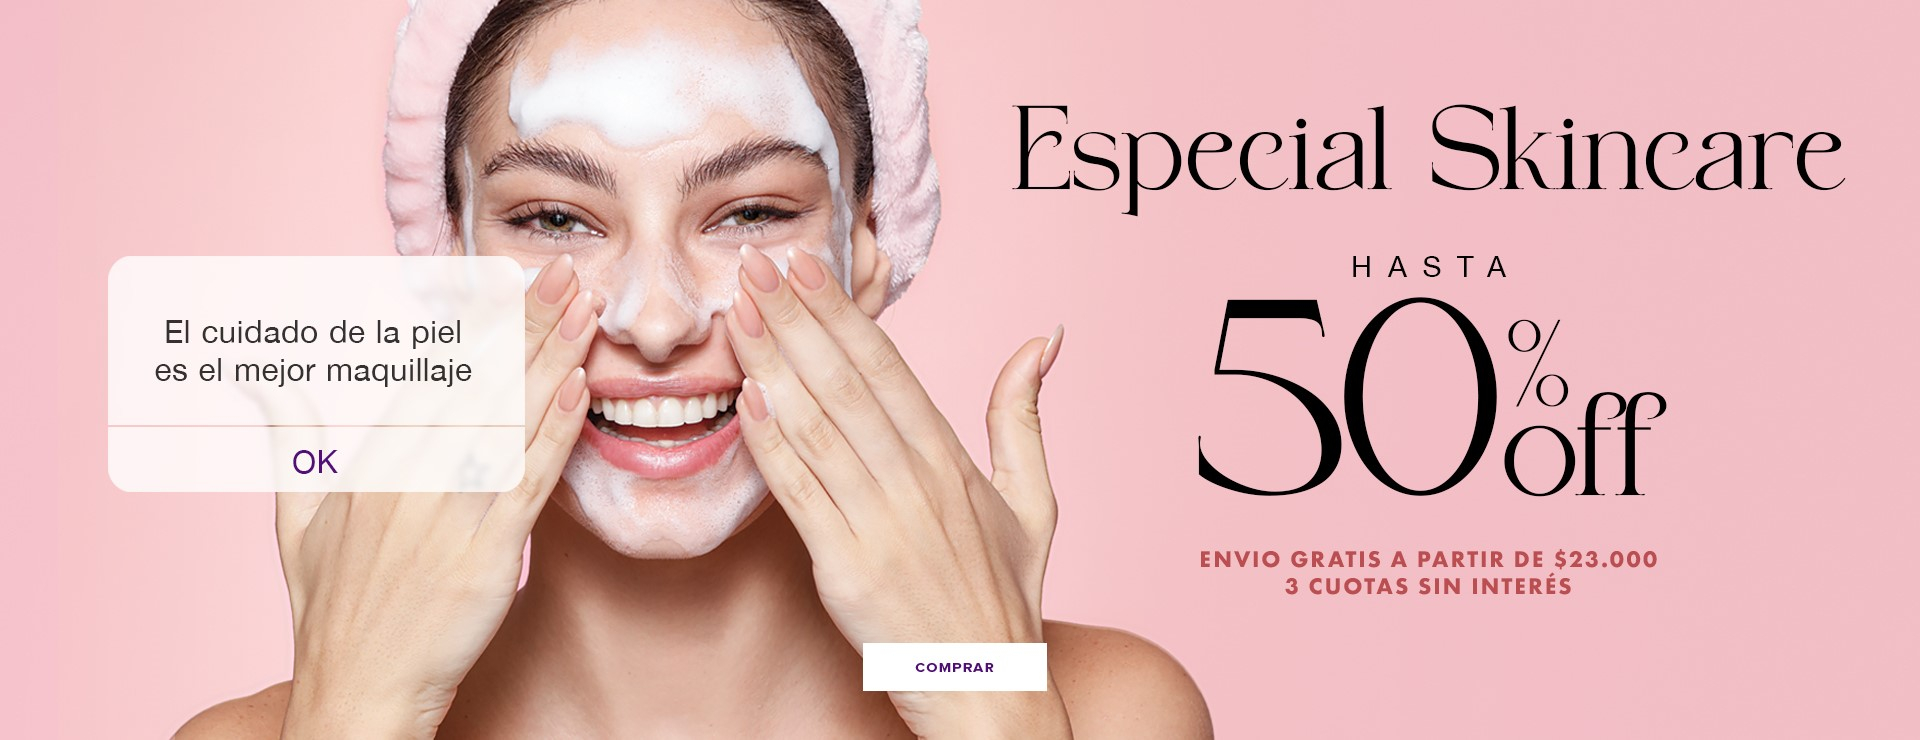 https://www.violettacosmeticos.com/especial-skincare.html